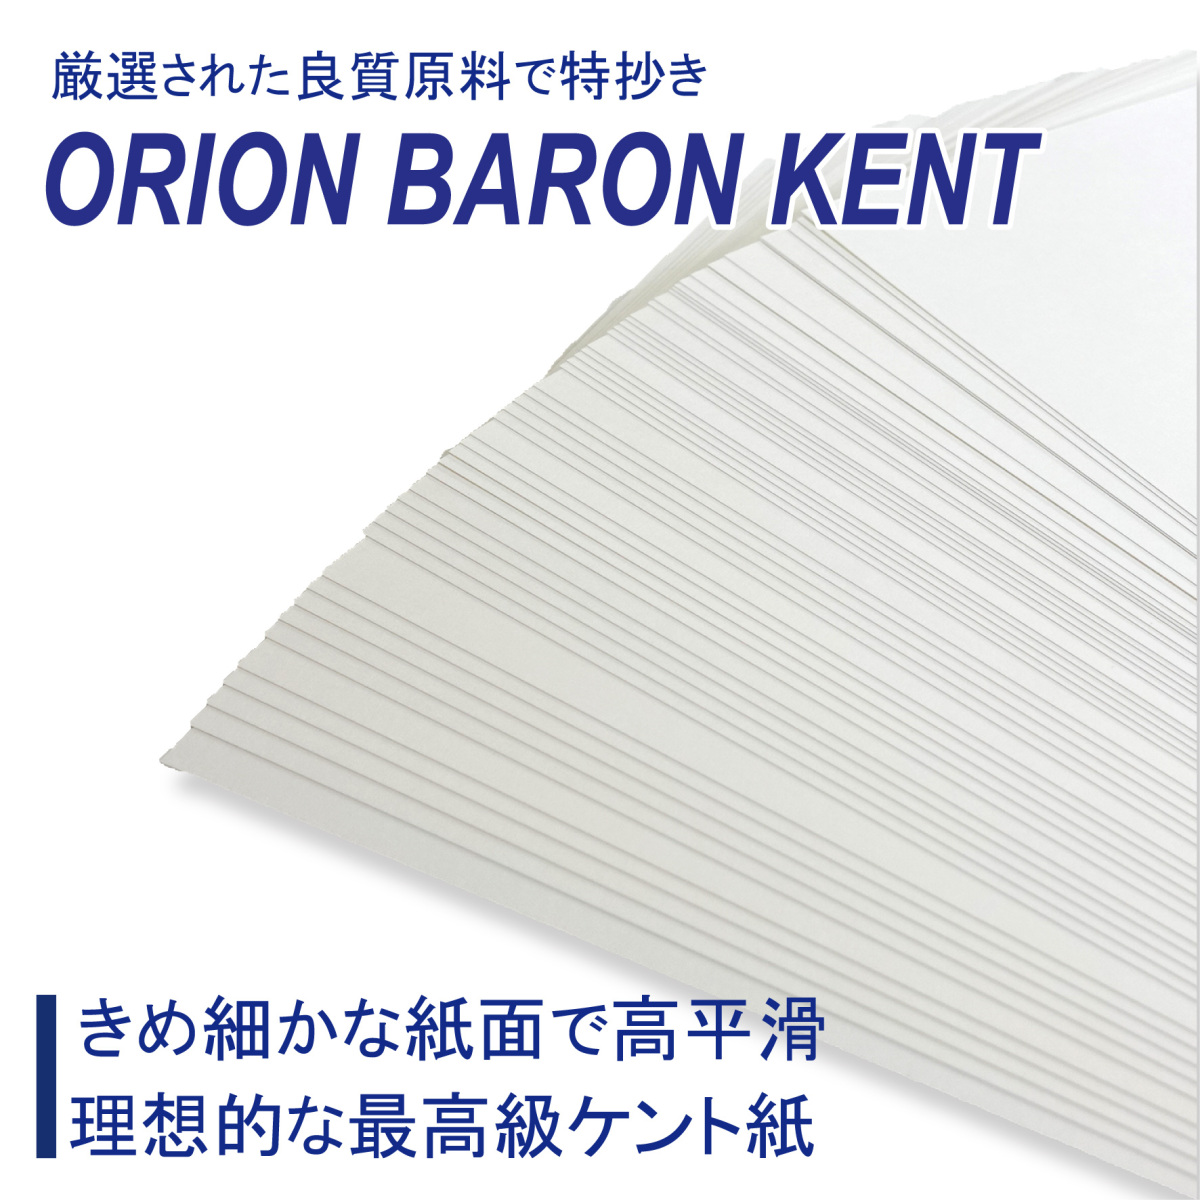  kent paper Orion ba long kent paper #150 &lt;125kg&gt; 50 sheets insertion A4 size 